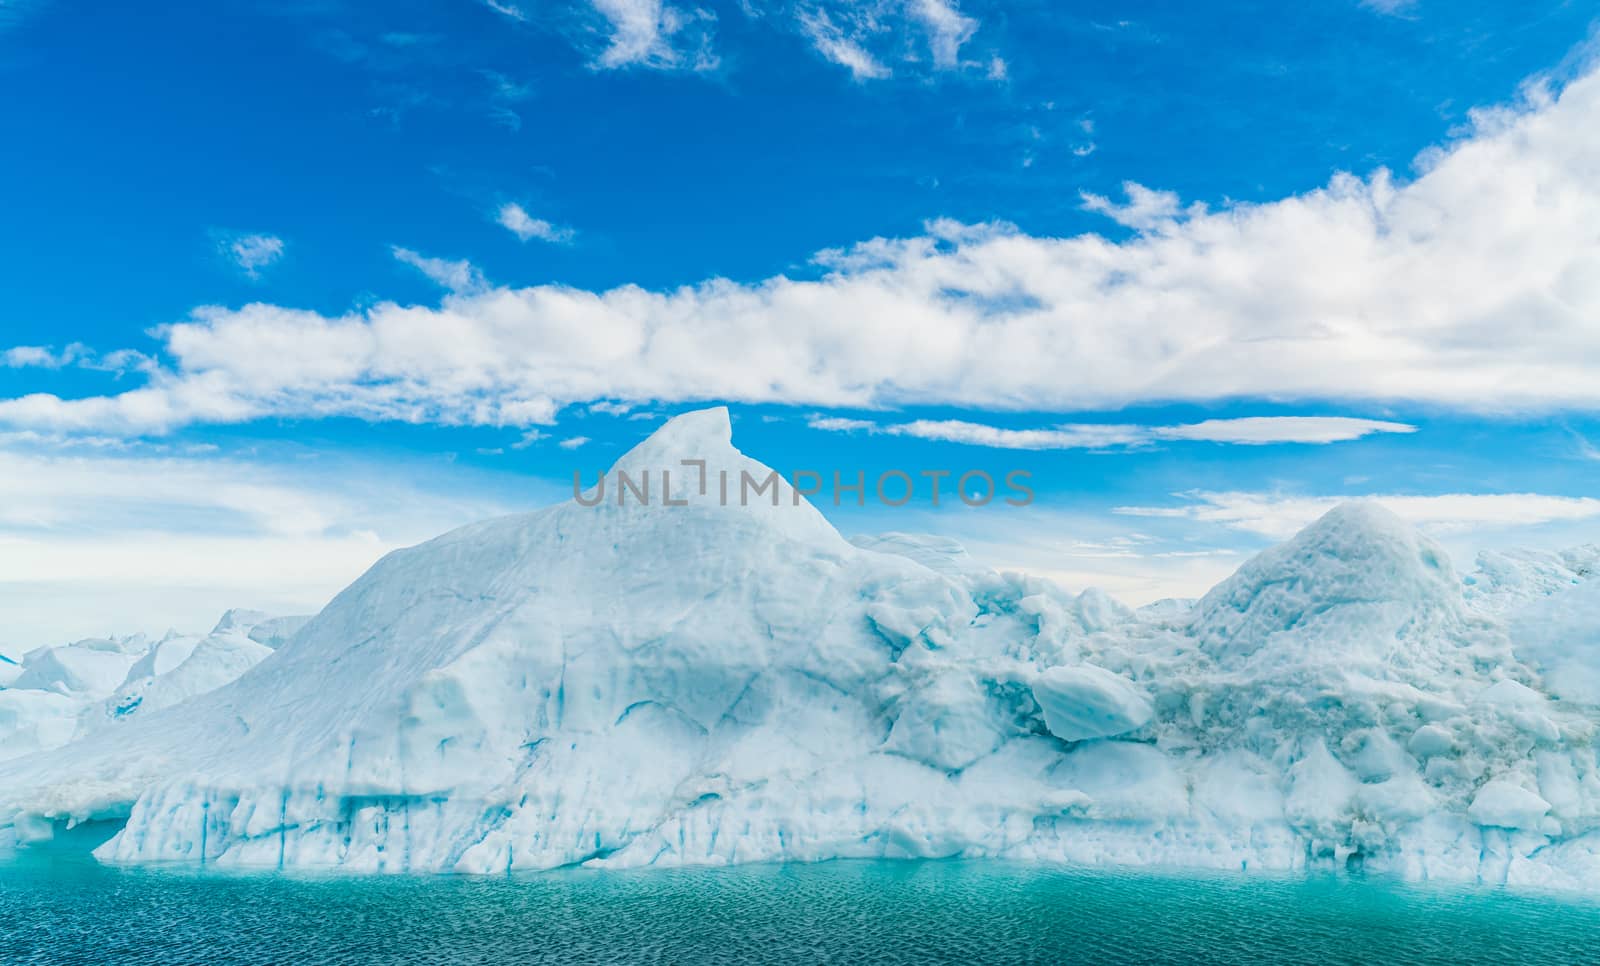 Global warming - Greenland Iceberg landscape of Ilulissat icefjord with iceberg by Maridav